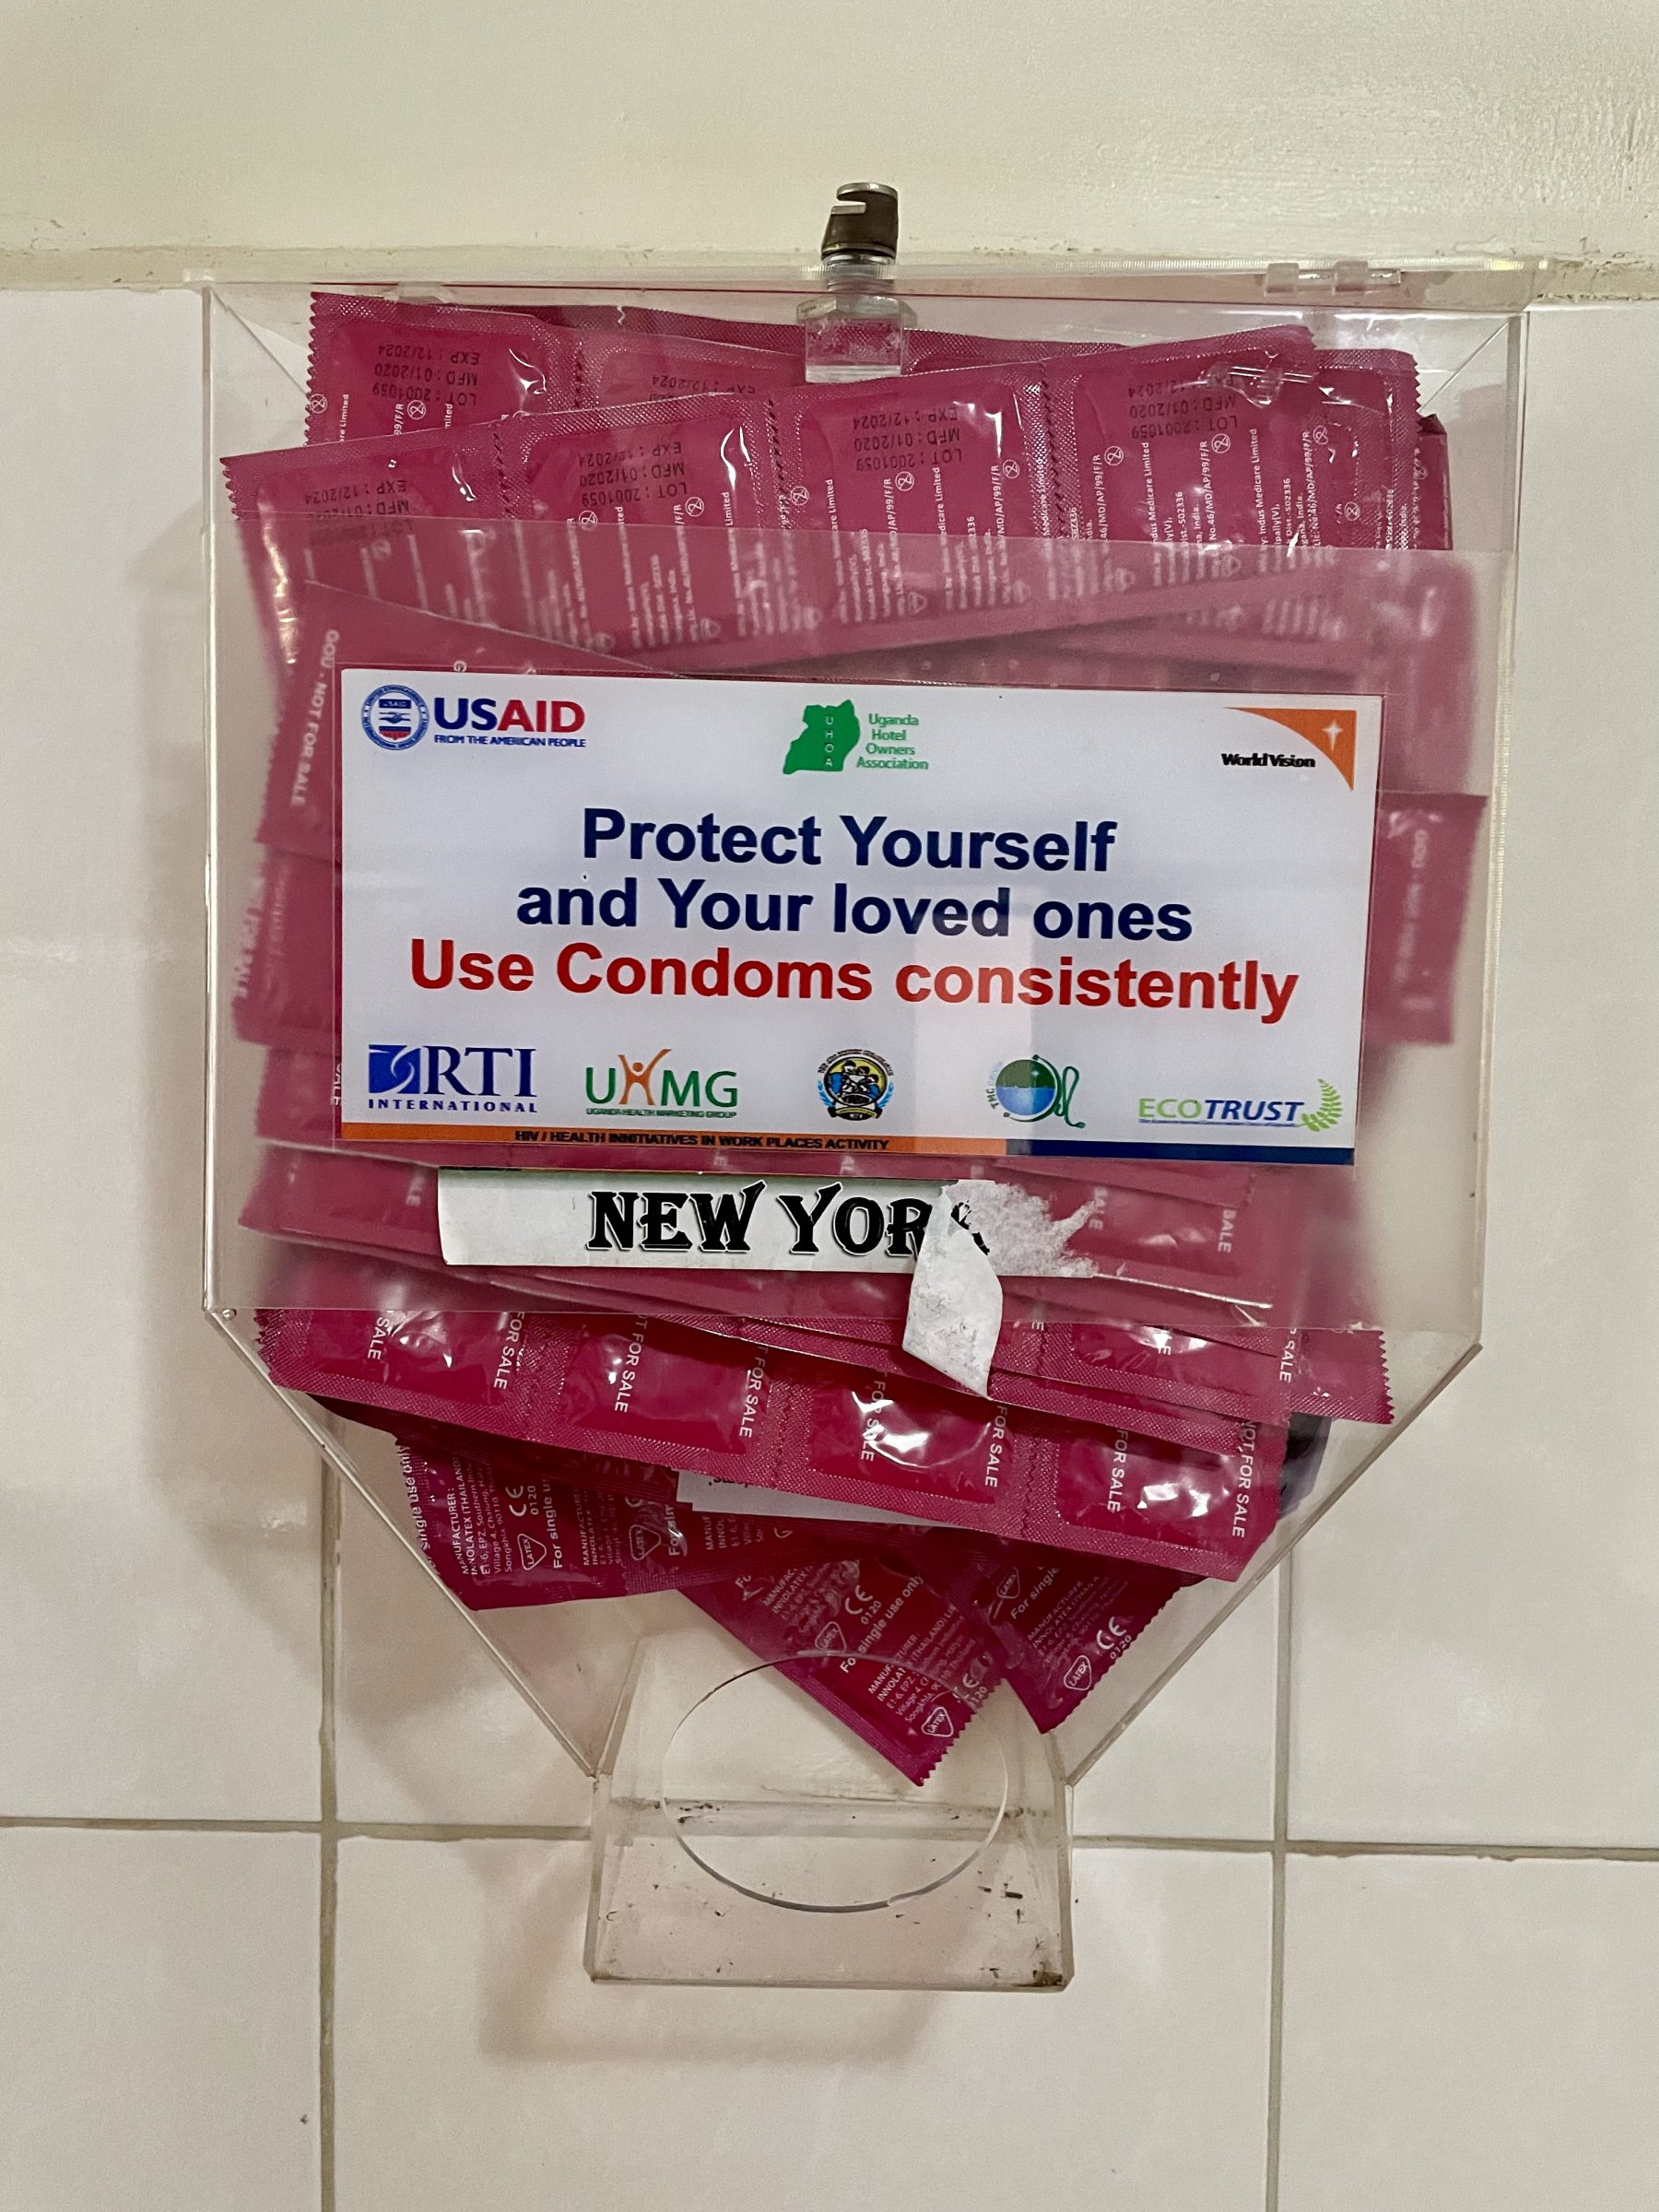 Gratis condooms verstrekt door US Aid in Bomah Hotel